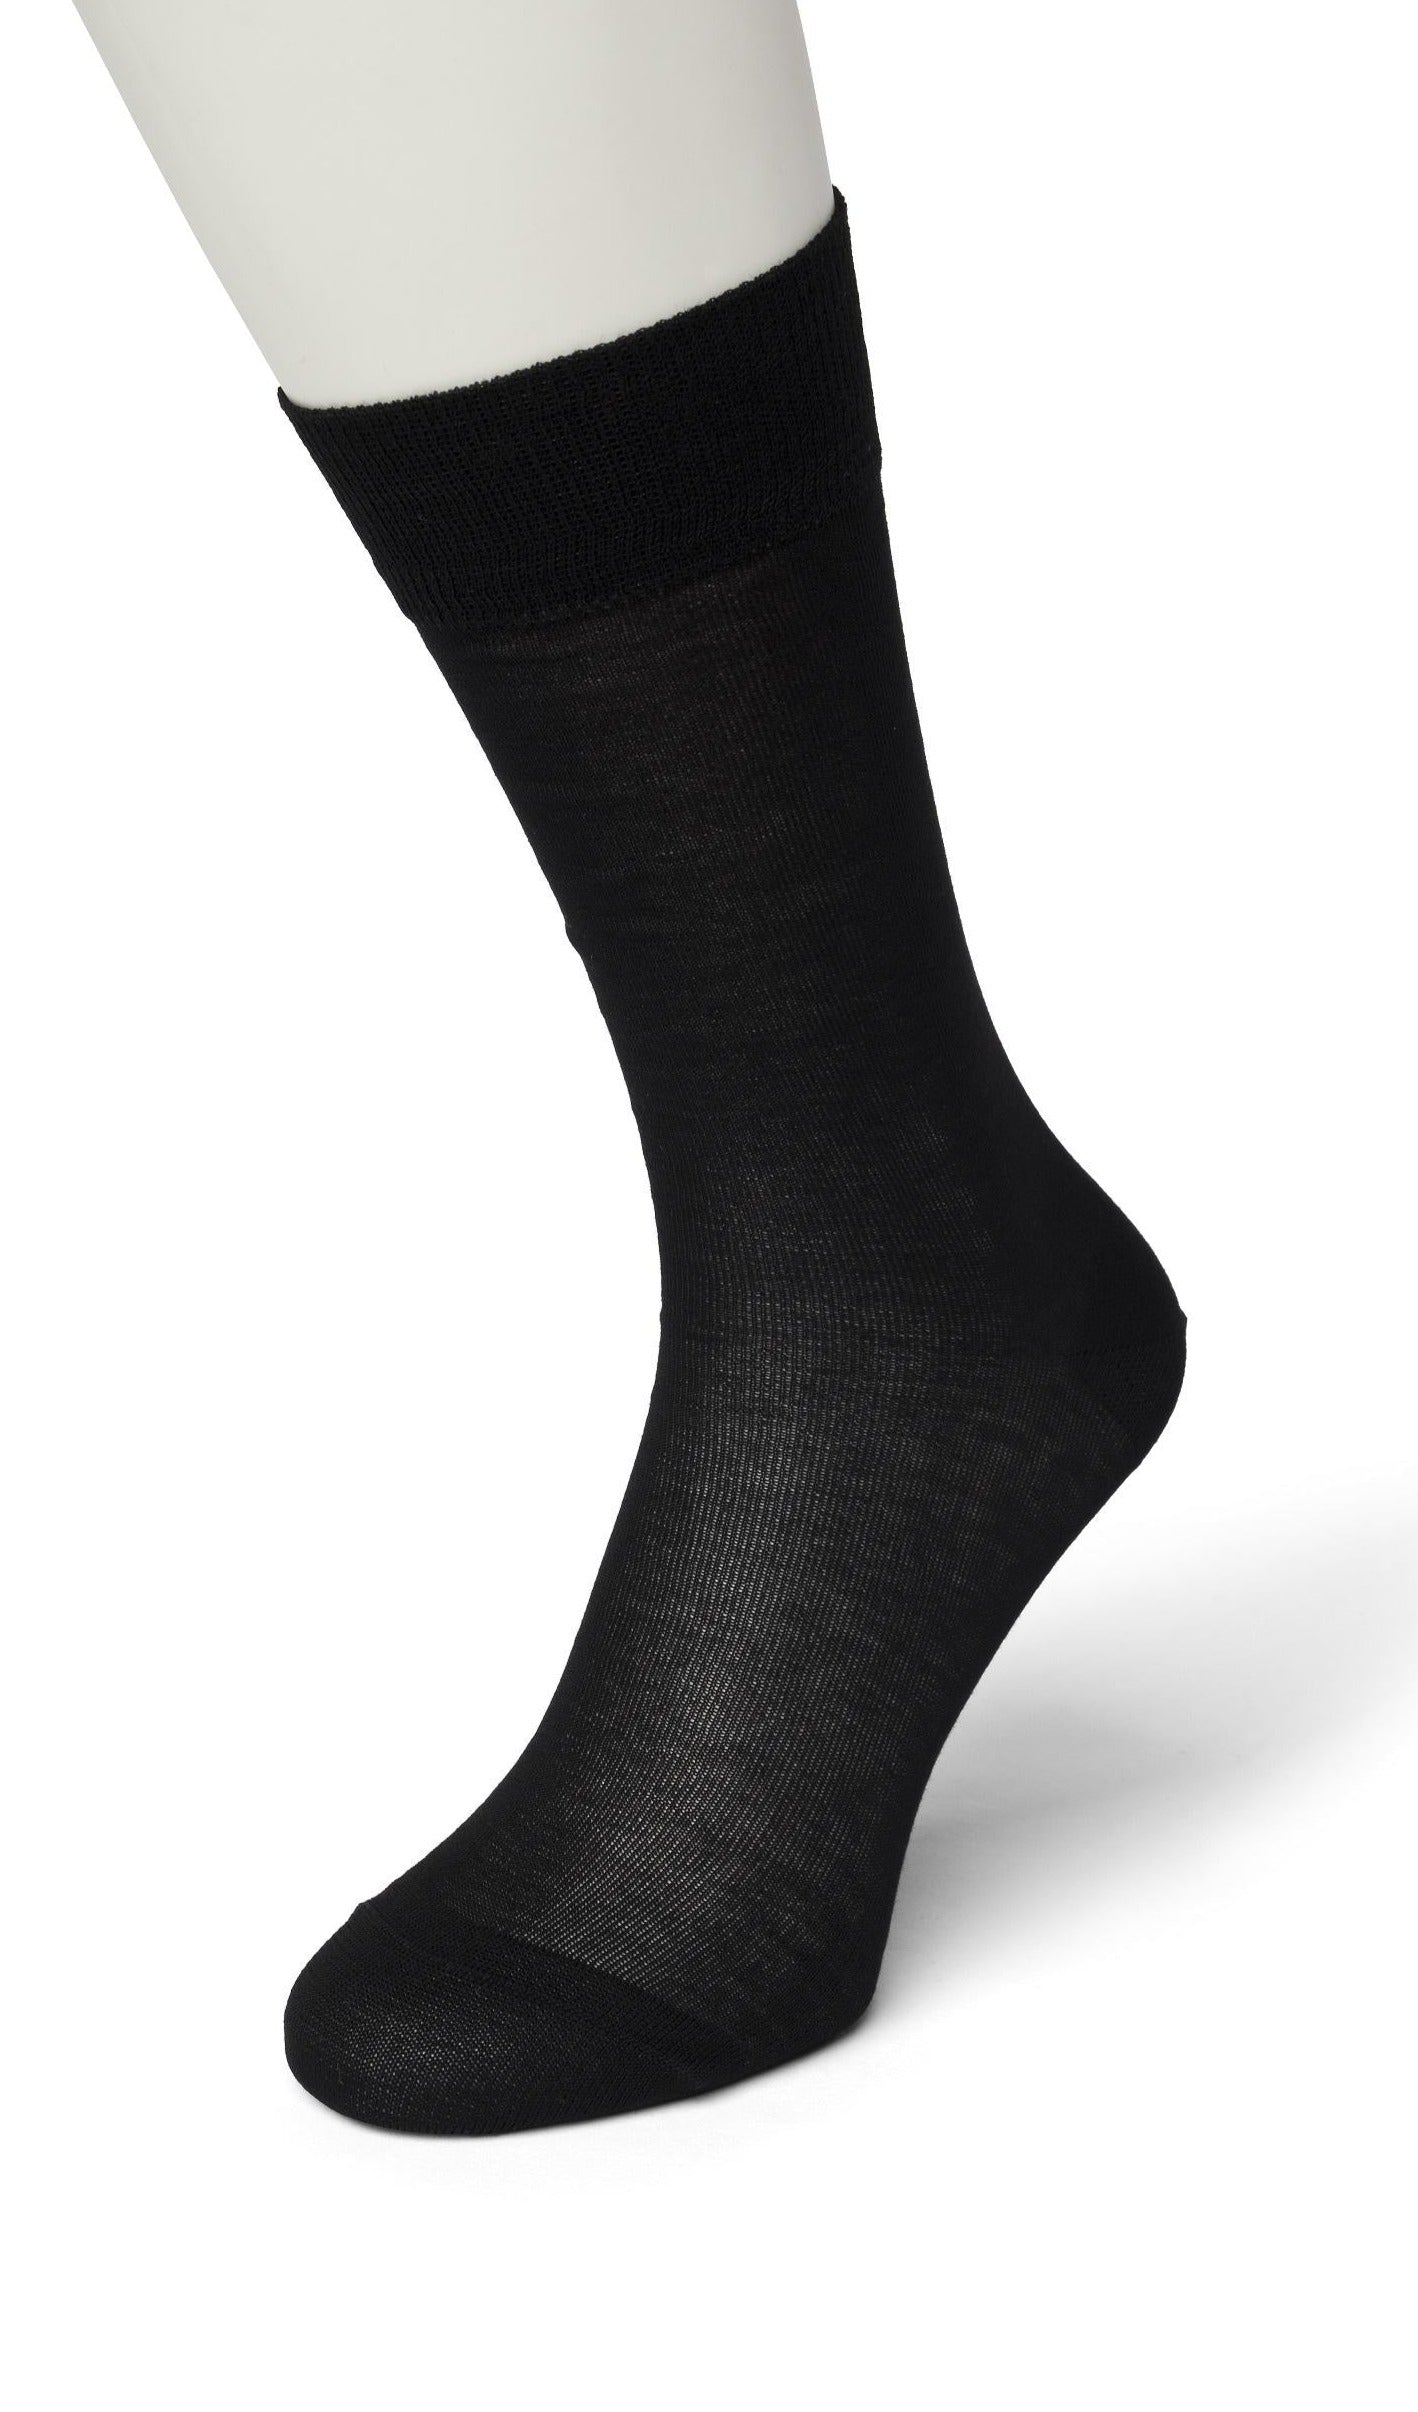 Bonnie Doon Pure Cotton Sock - black 100% cotton lightweight men's crew ankle dress sock